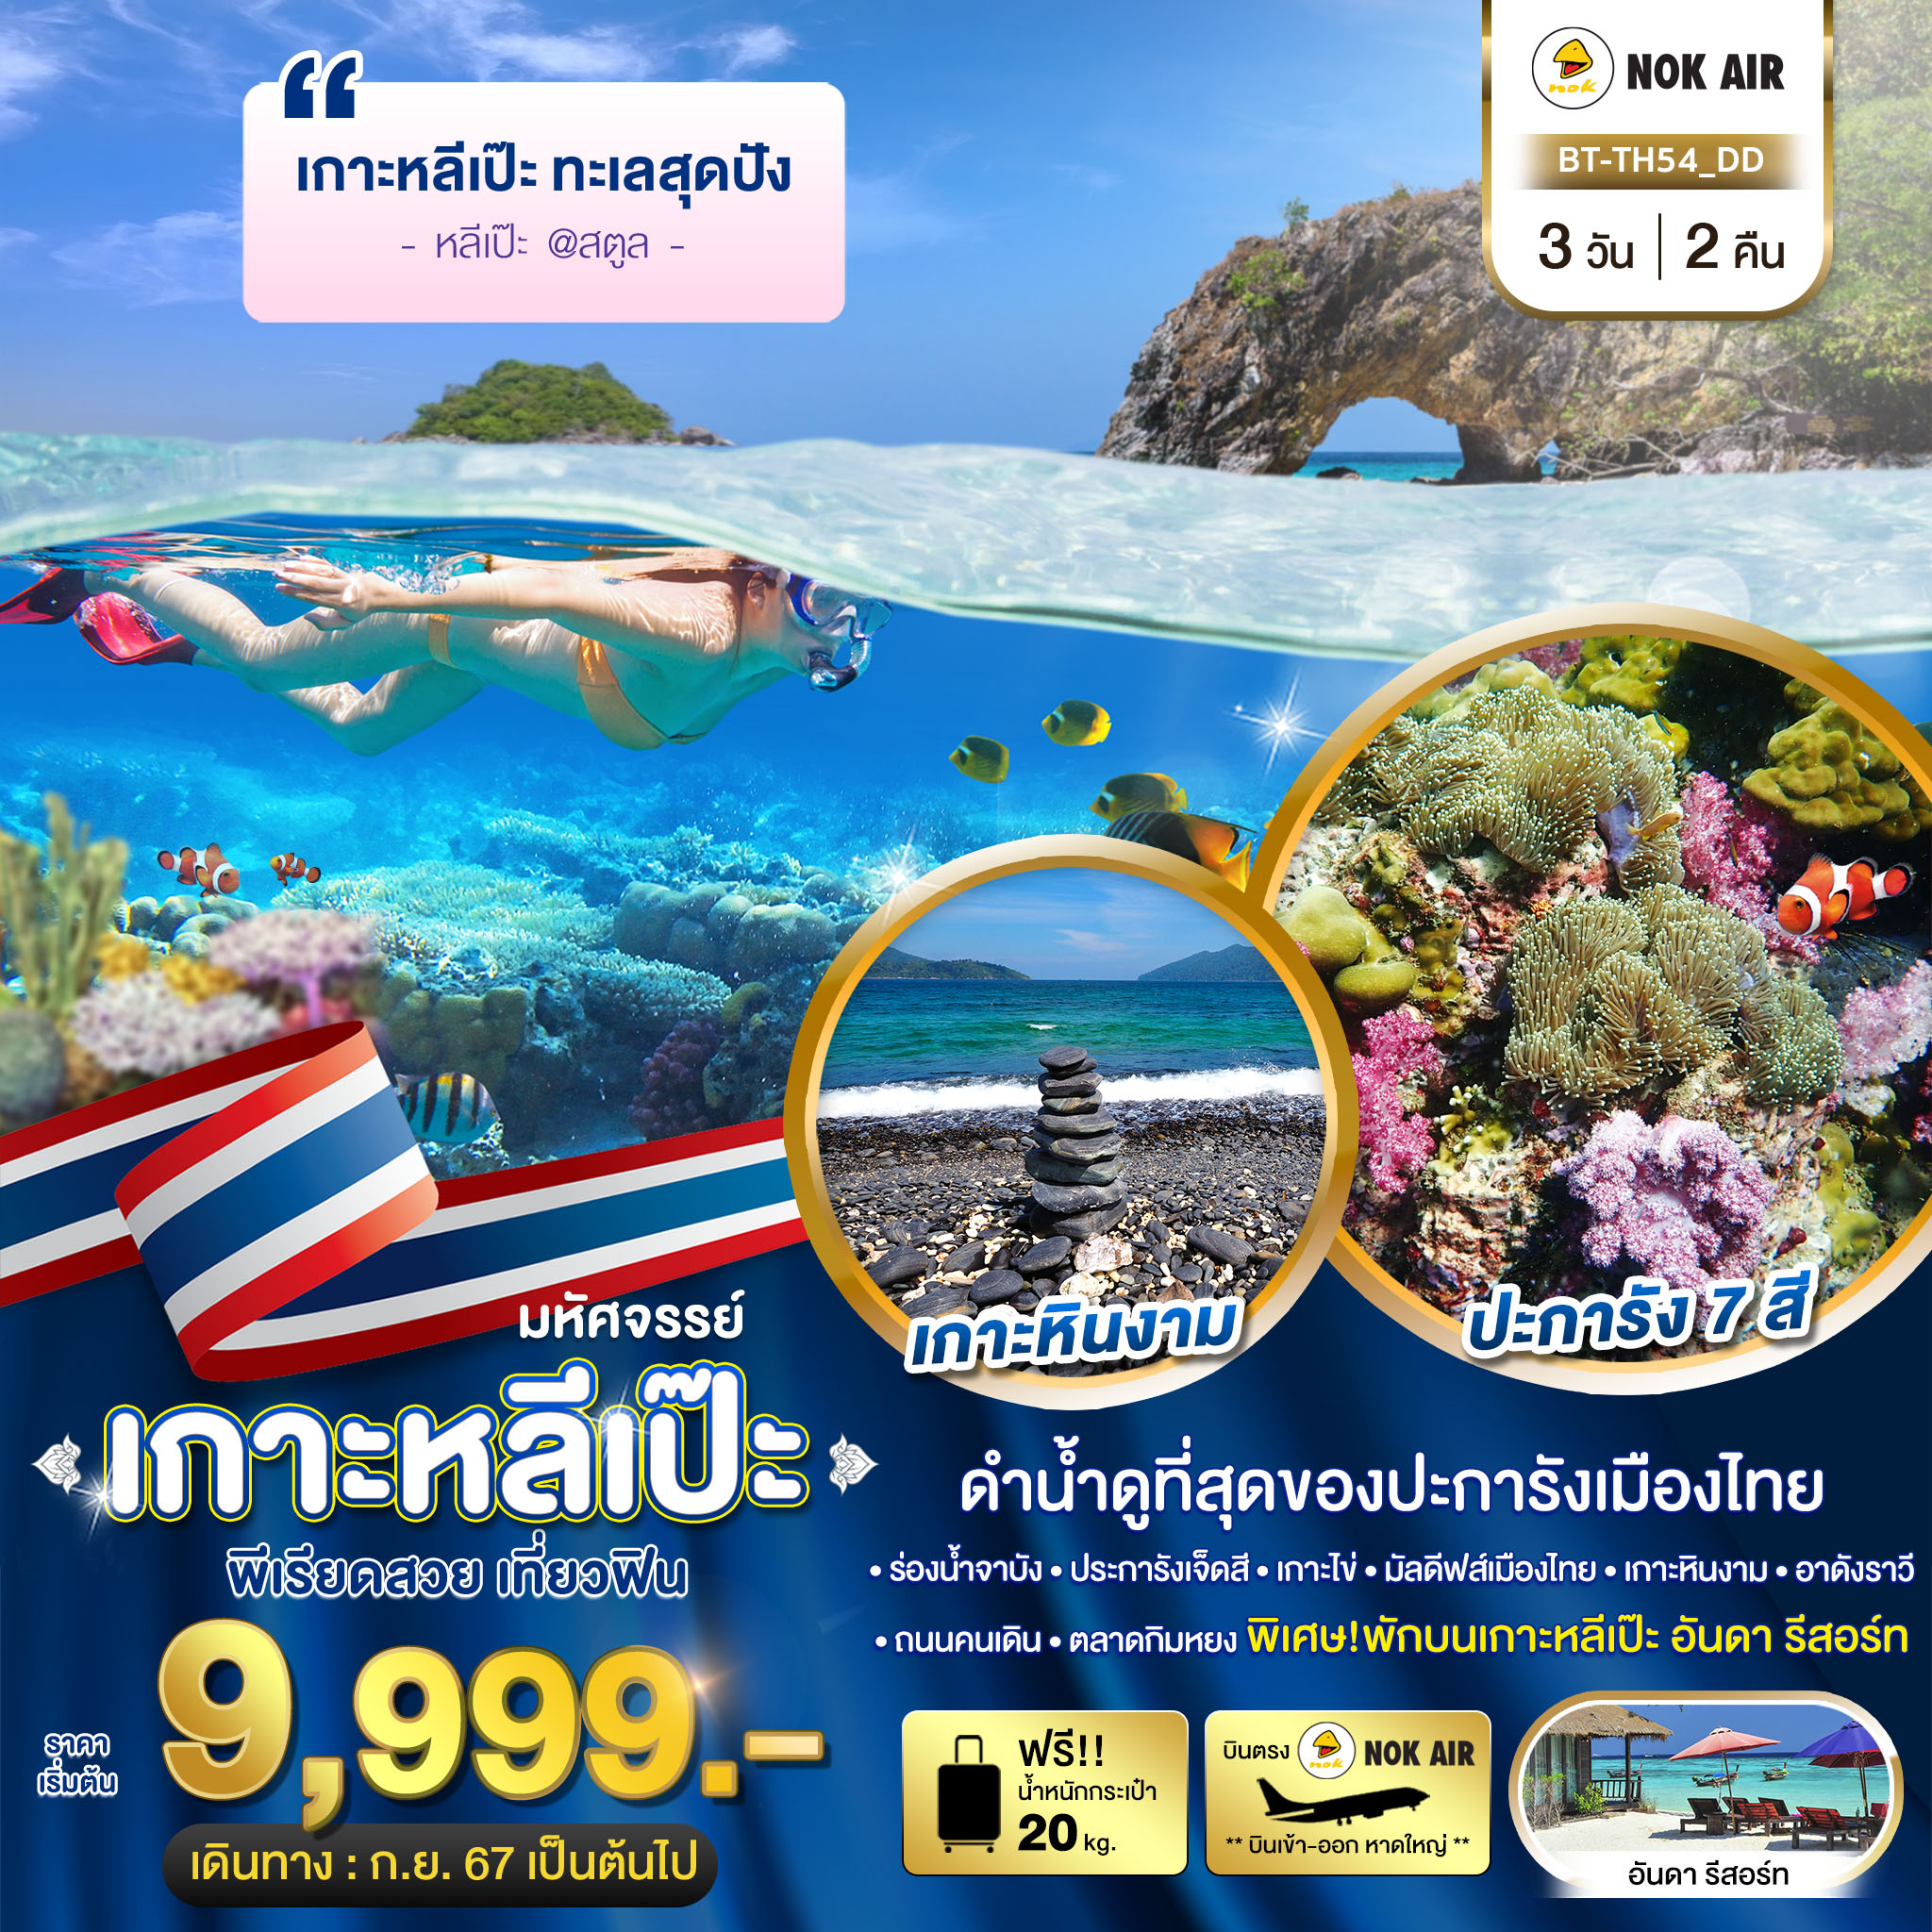 ทัวร์ไทย เกาะหลีเป๊ะ ทะเลสุดปัง ดำน้ำดูที่สุดของประการังเมืองไทย 3 วัน 2 คืน